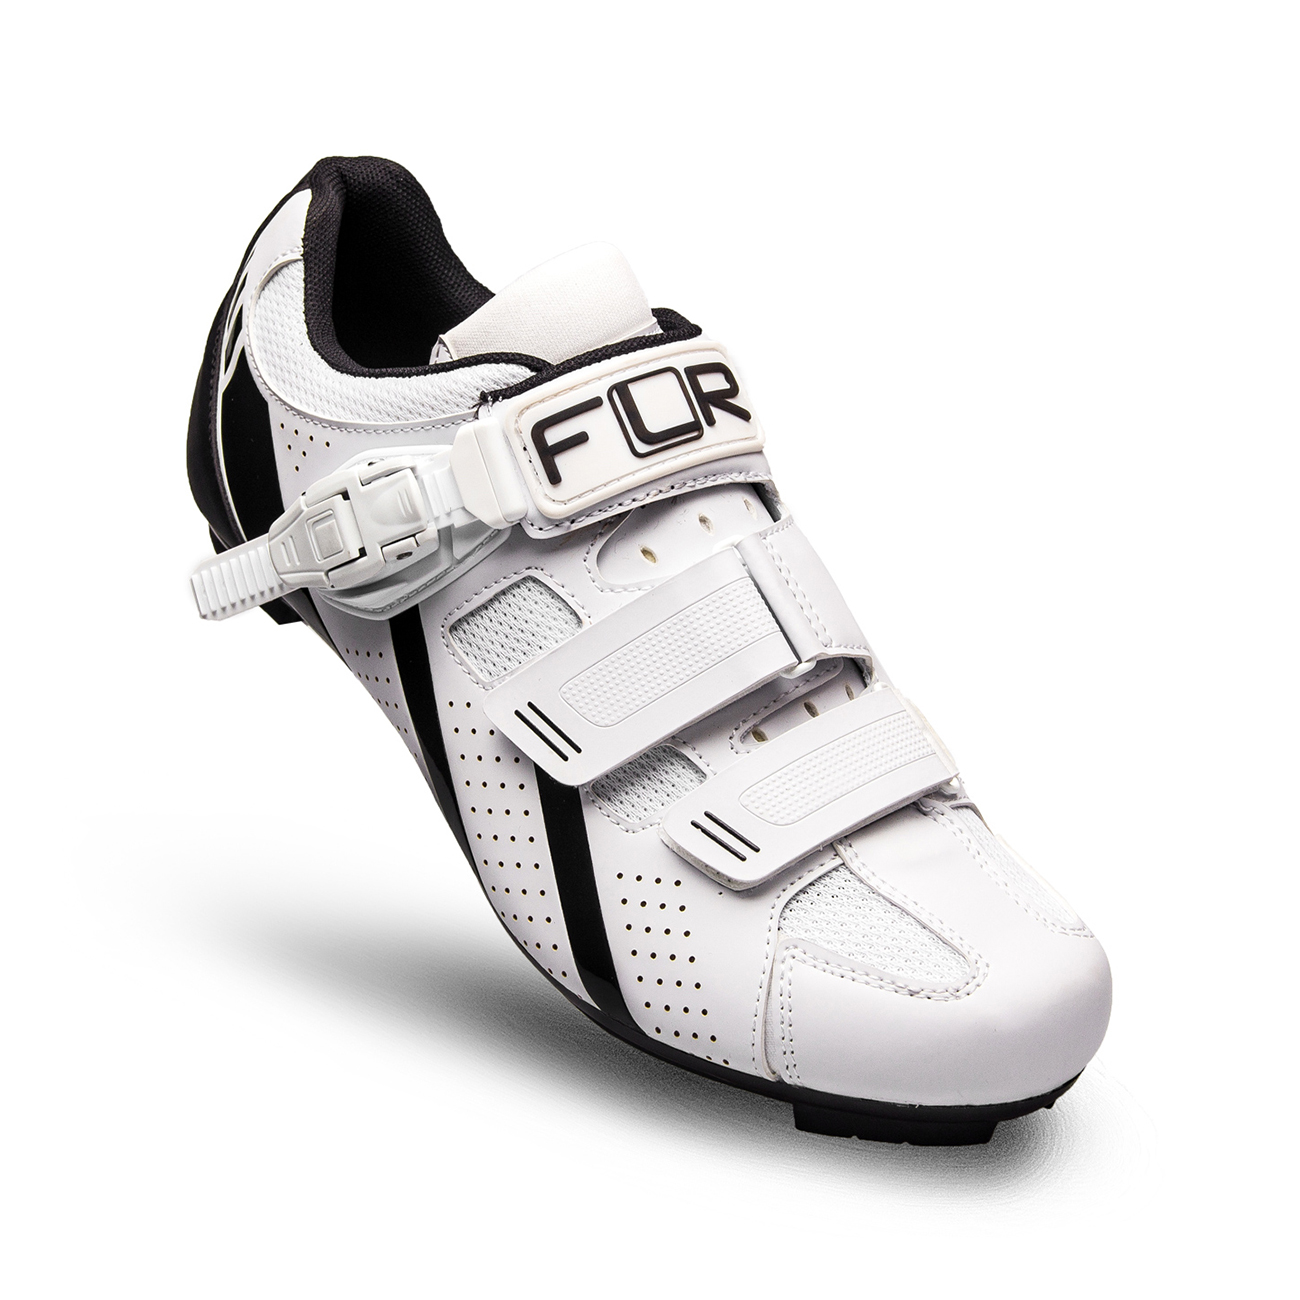 
                FLR Cyklistické tretry - F15 - černá/bílá 40
            